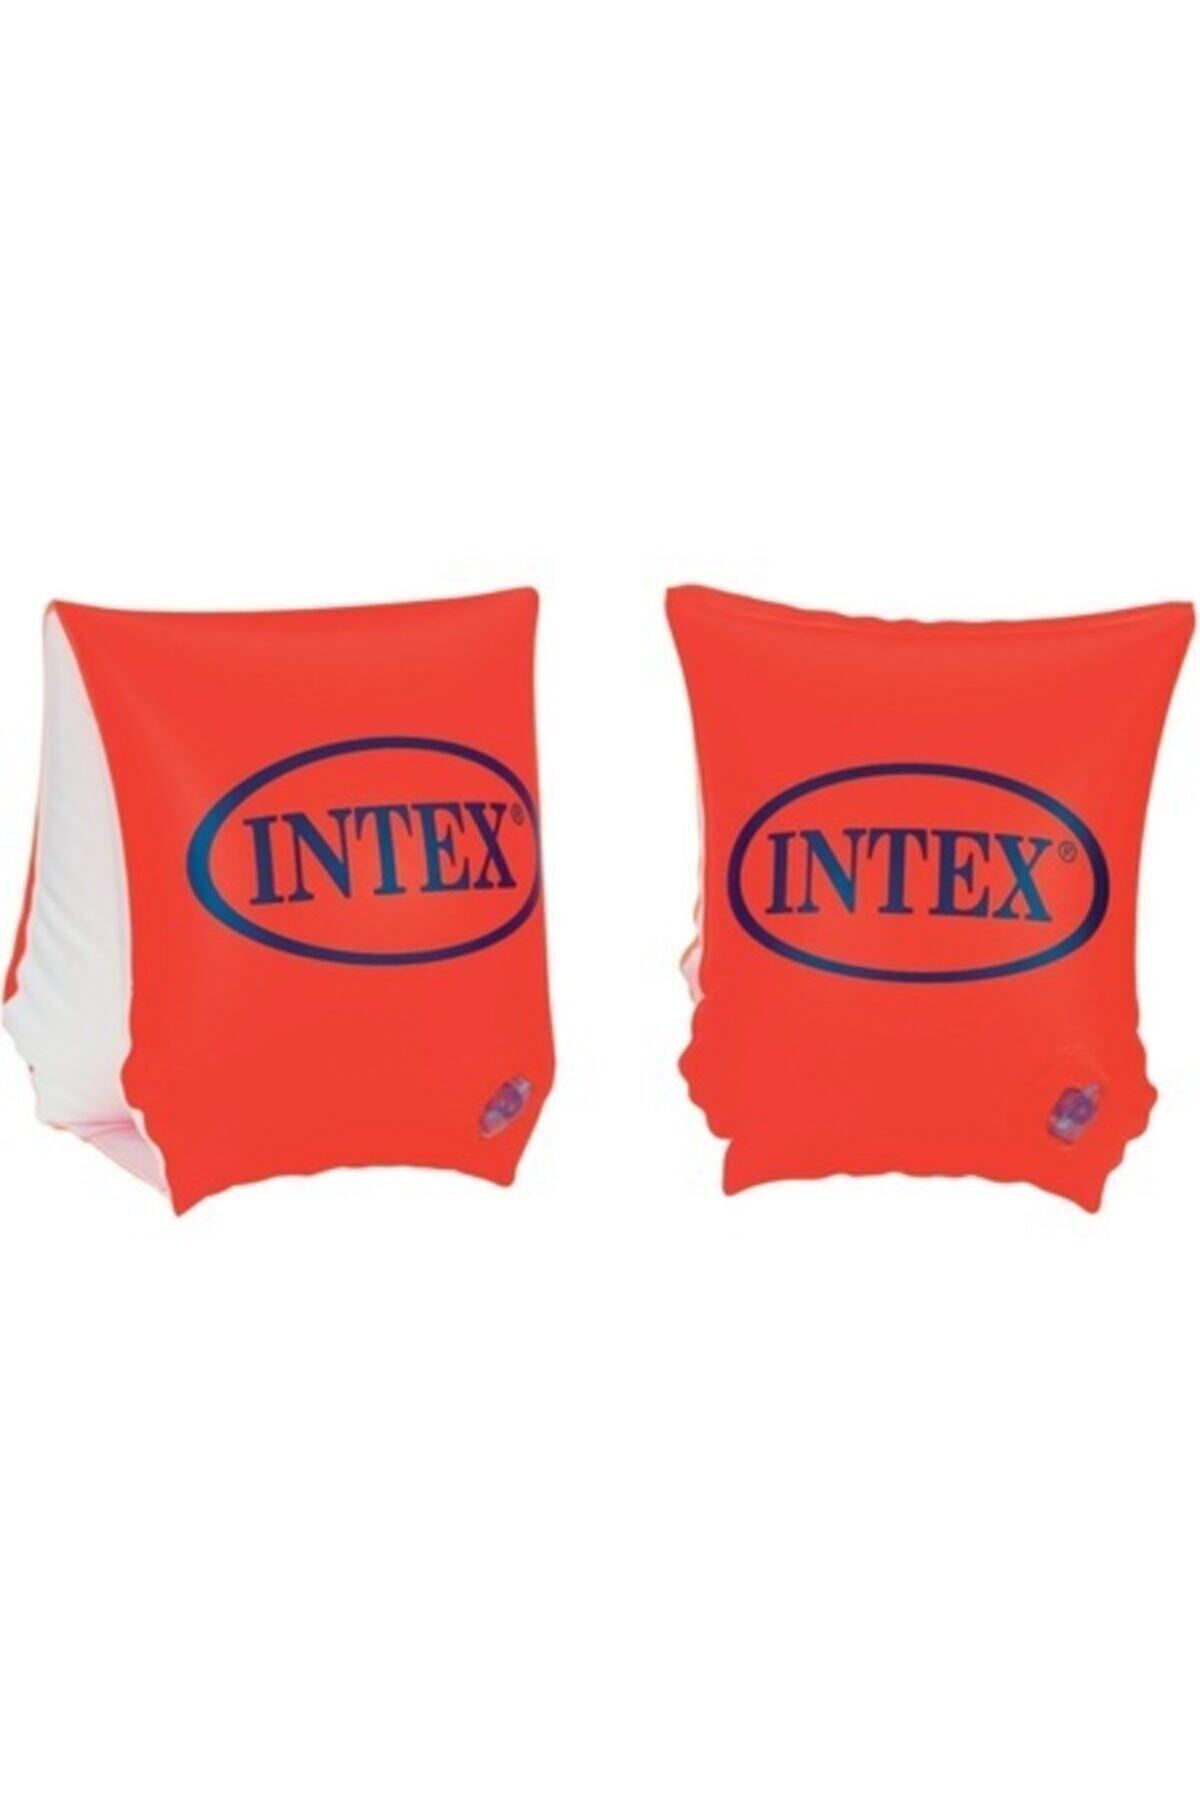 Intex Kolluk Kırmızı 23x15cm Intex - 58642